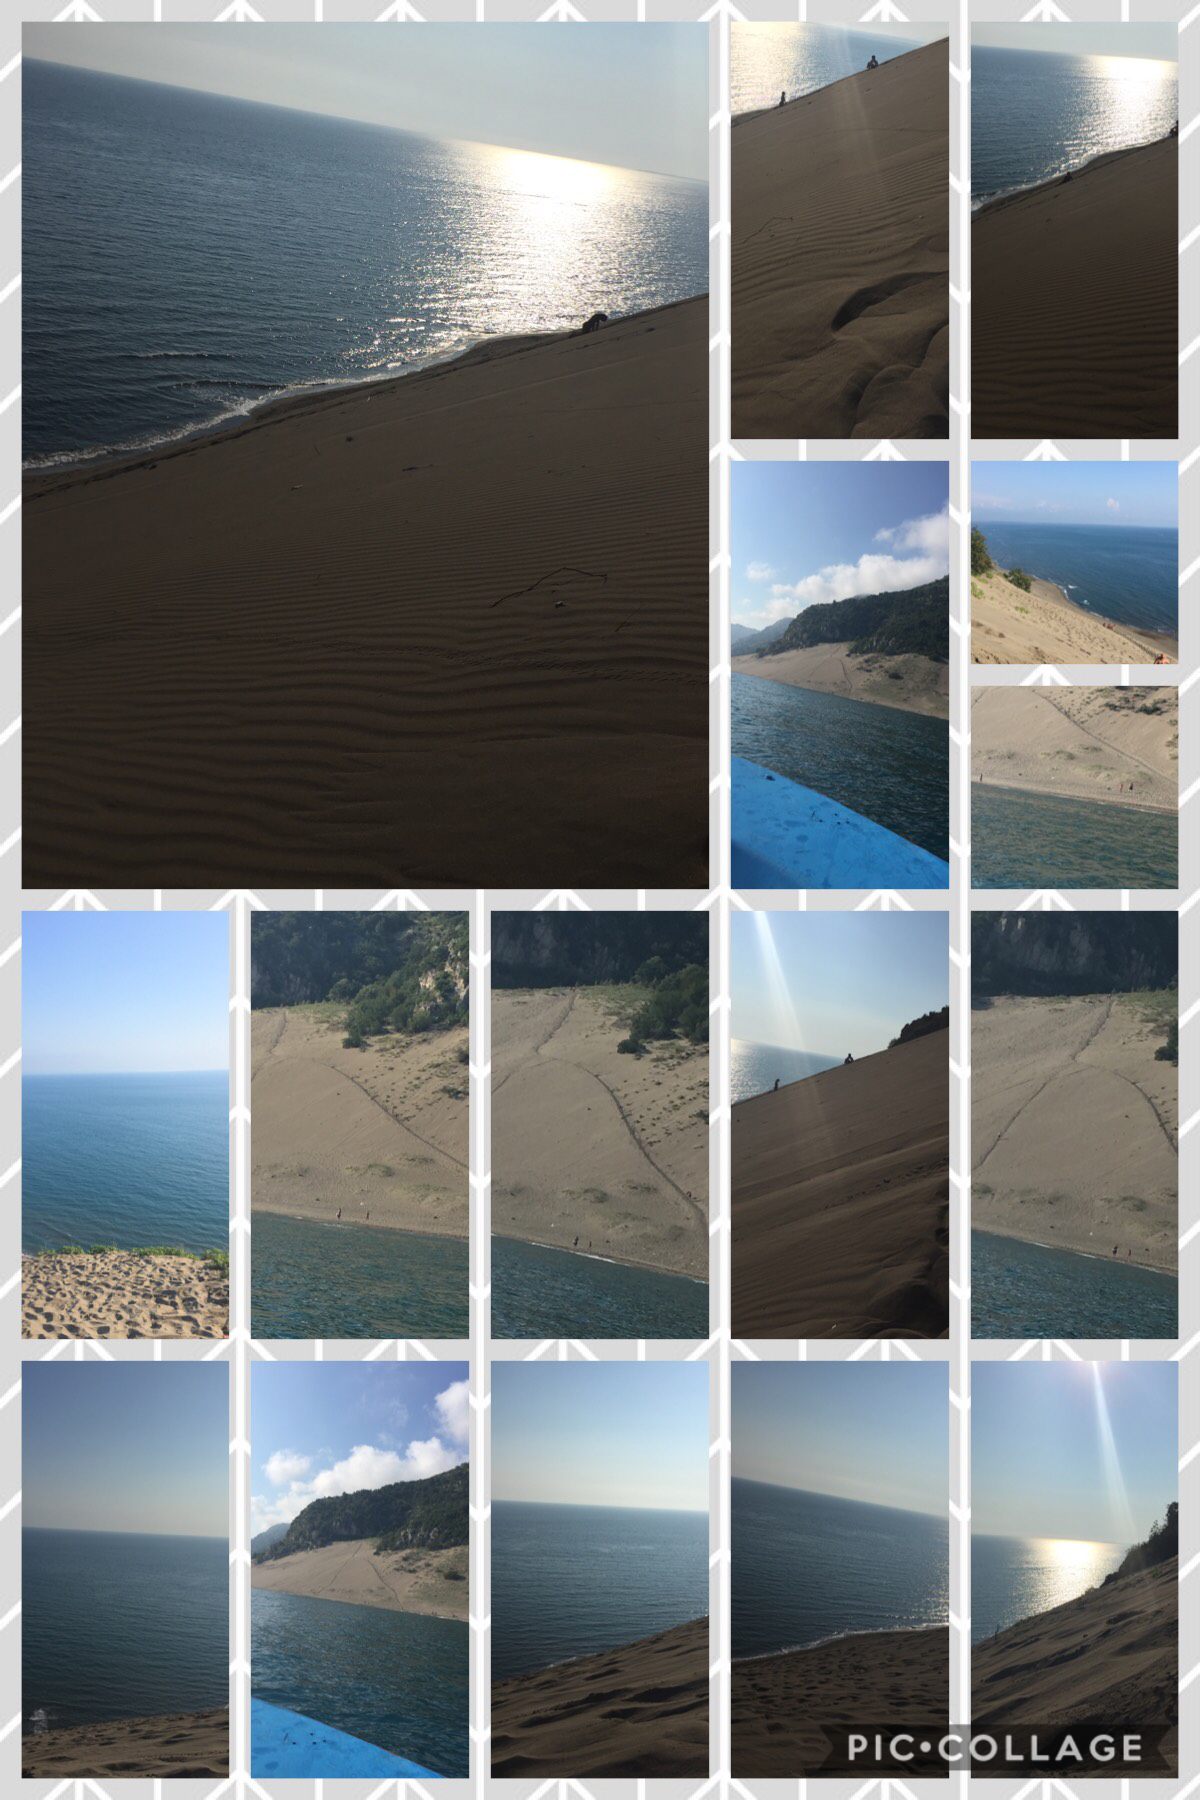 Massive sand dune I climbed 😱😂